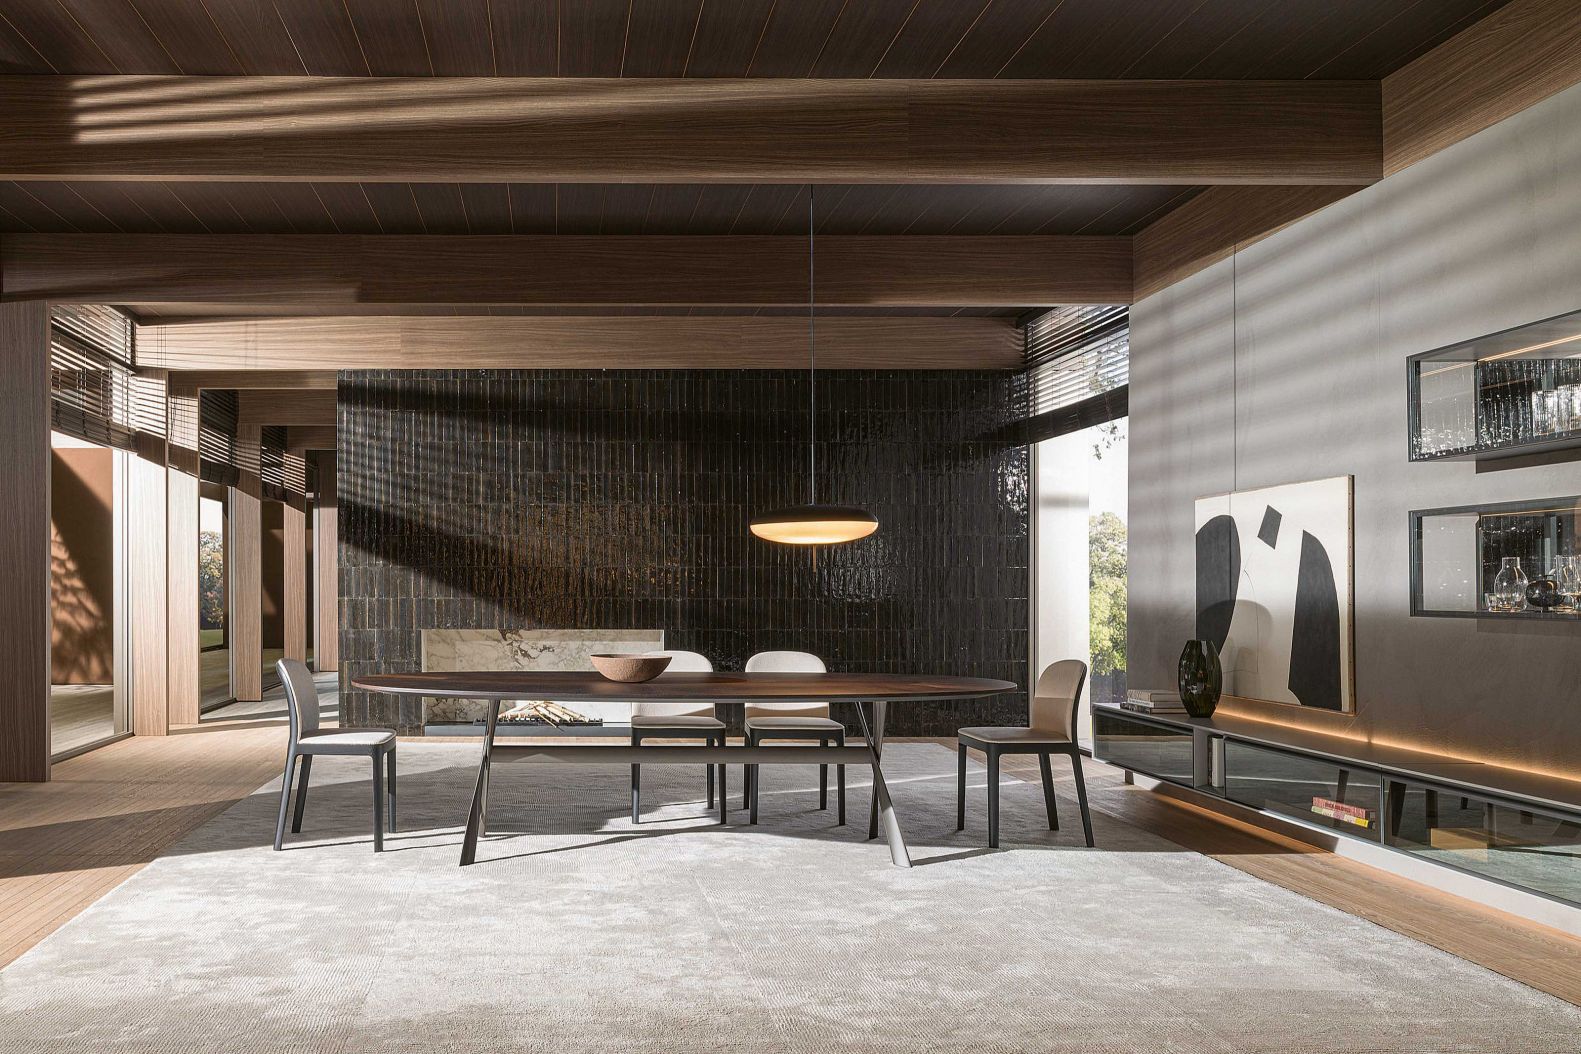 2019 hat der Mailänder Architekt Rodolfo Dordoni «Gatwick» entworfen. Und wie der Flughafen will auch der Tisch ein Treffpunkt sein, jedoch in ganz persönlichem Rahmen. Neu mit einer Platte in Eukalyptusholz erhältlich. MOLTENI.IT